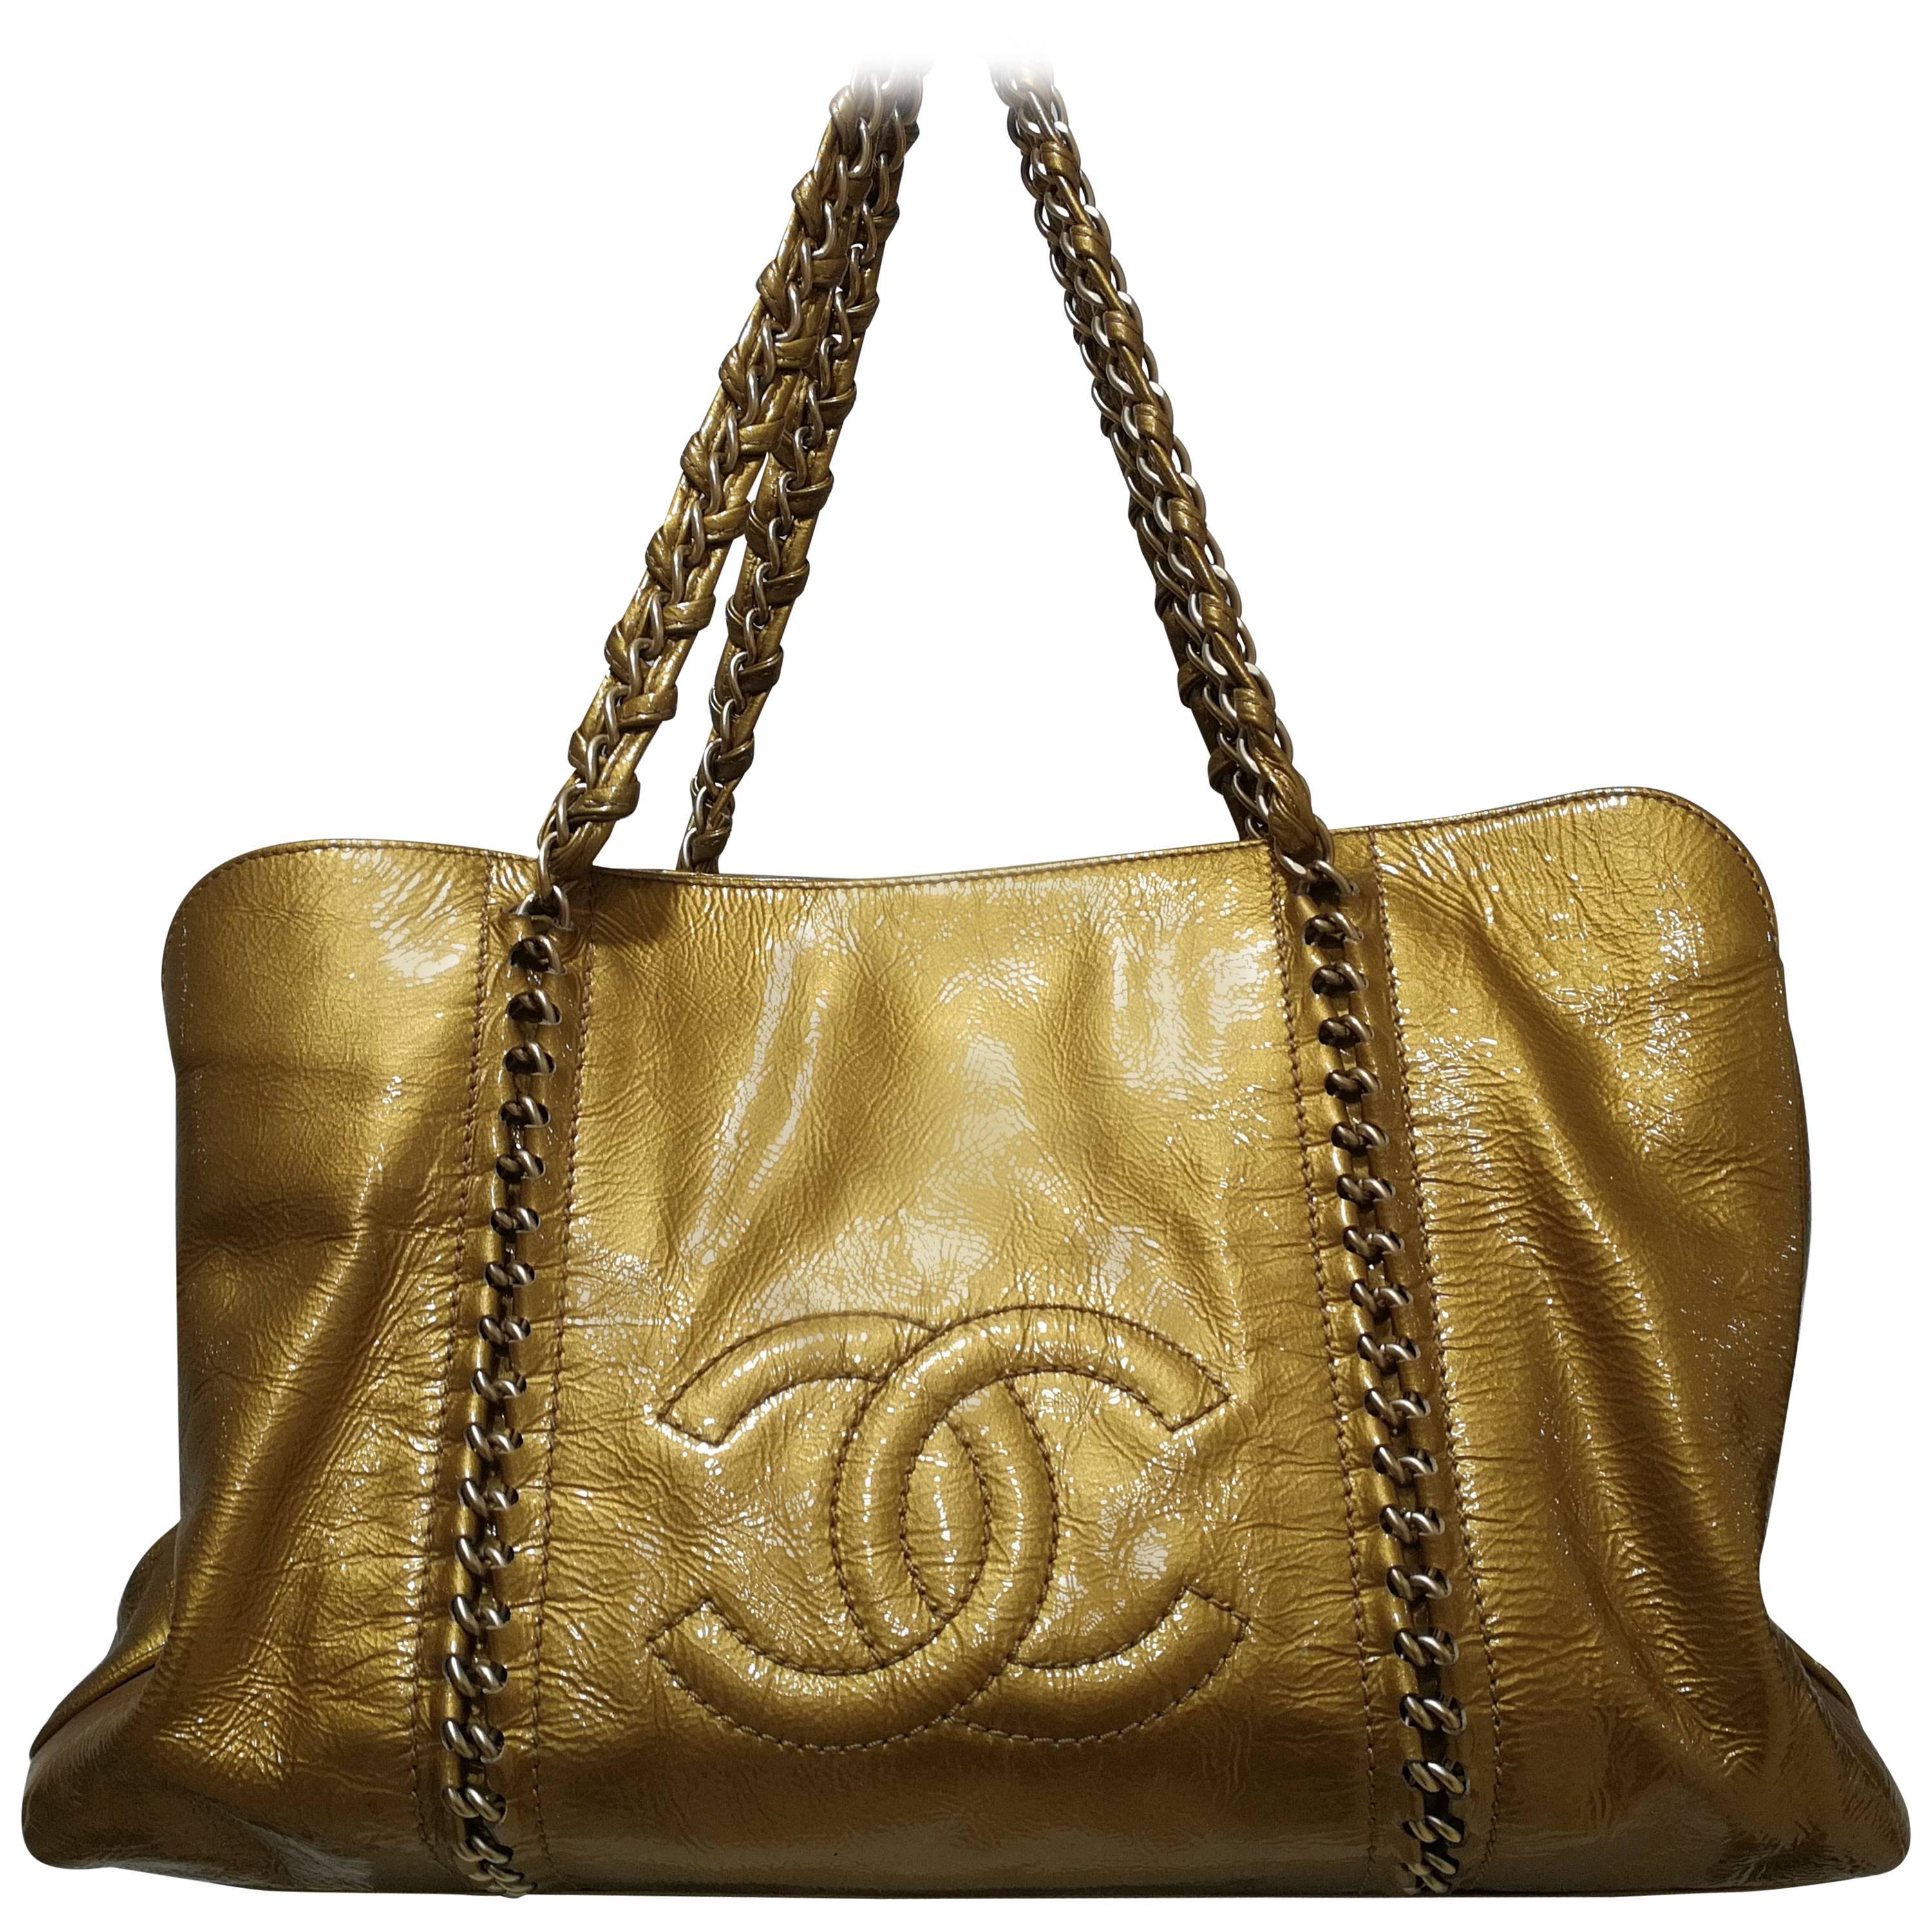 Chanel gold patent leather shoulder bag